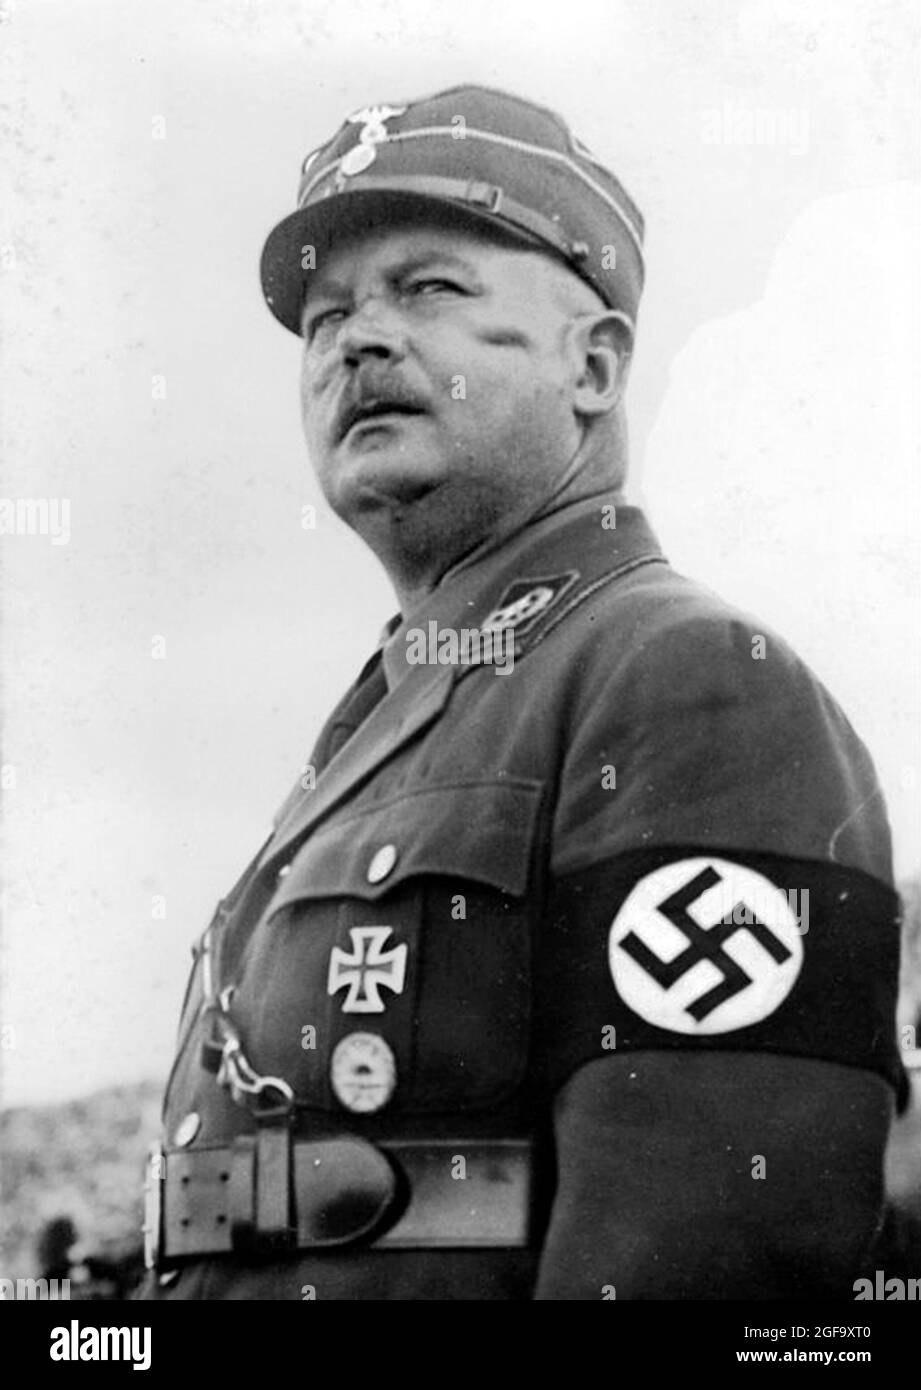 Le membre du parti nazi Ernst Röhm. Il était membre fondateur des chemises brunes nazies (Sturmabteilung Orsa). Il a été exécuté par la purge nazie la nuit des long Knives en 1934. Crédit: Bundesarchiv allemand Banque D'Images